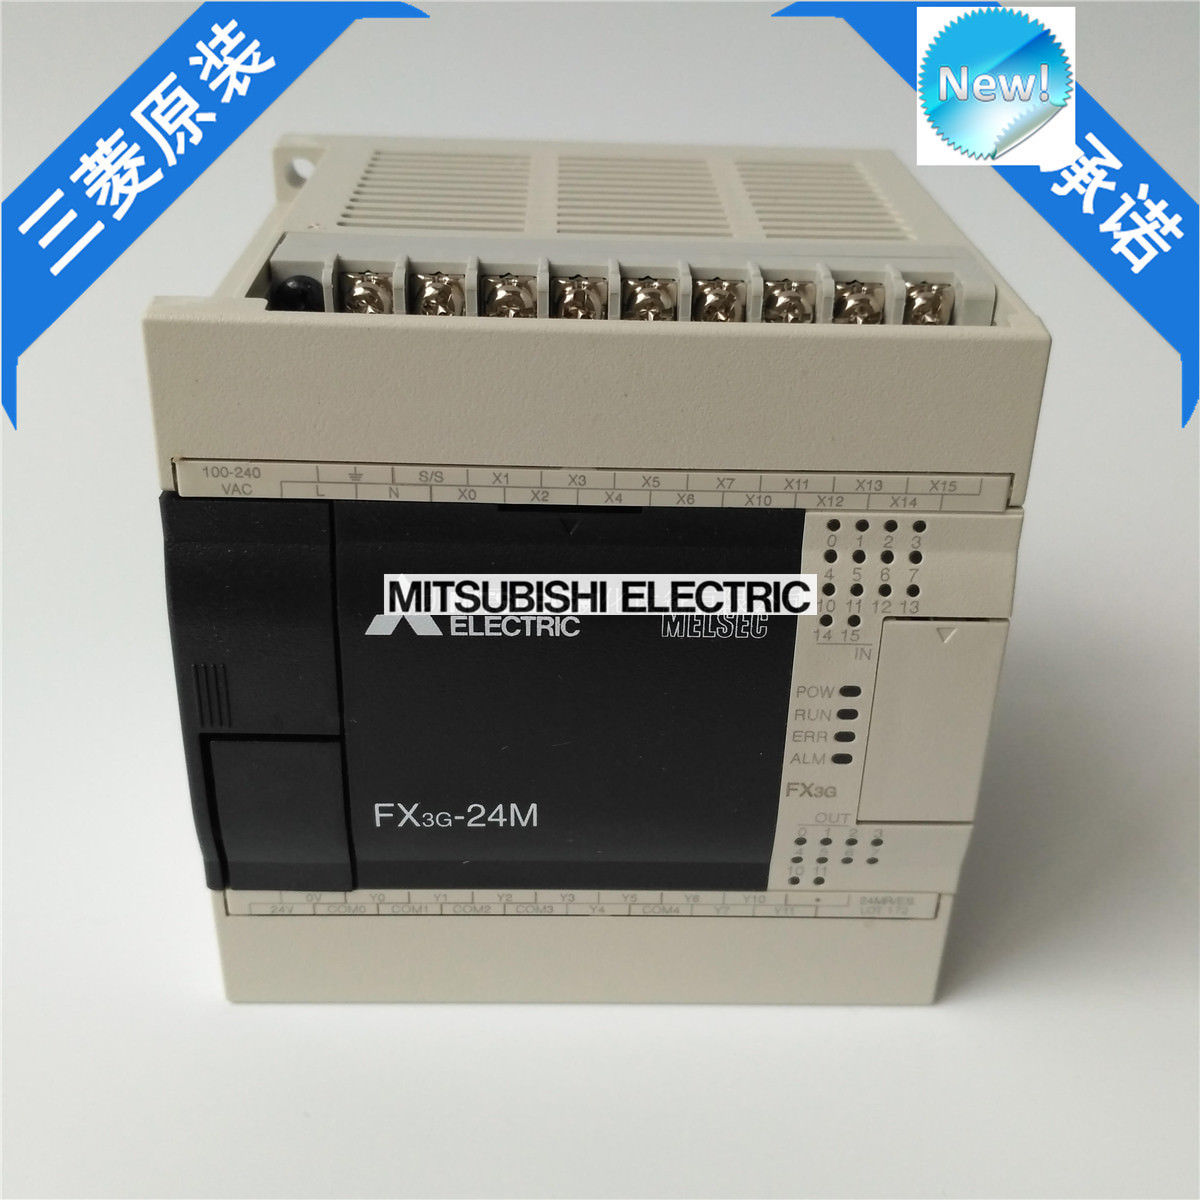 Original New Mitsubishi PLC FX3G-24MT/ES-A In Box FX3G24MTESA - Click Image to Close